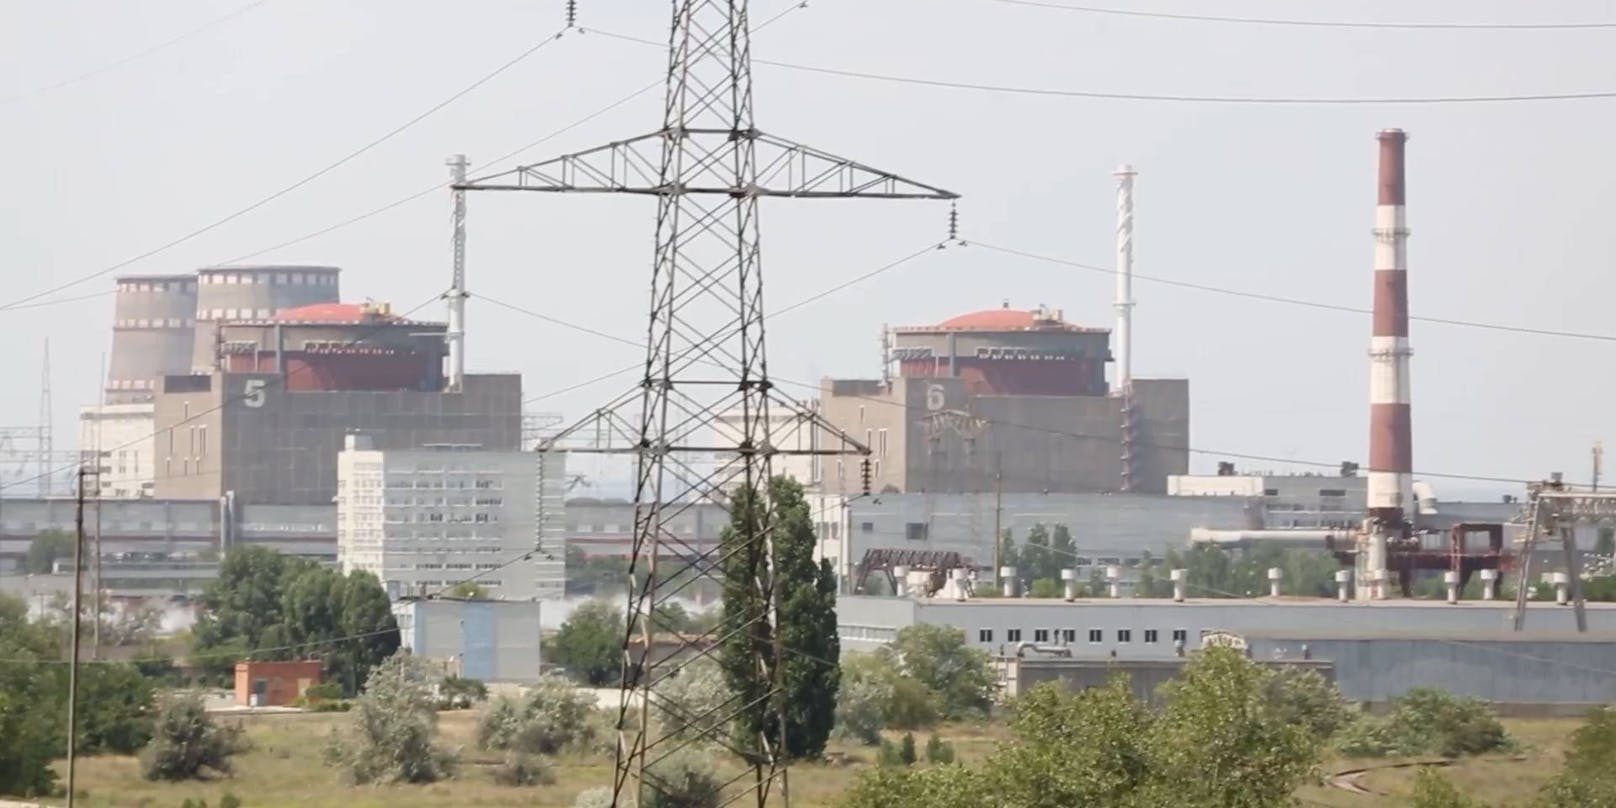 Der Reaktor baue Kapazität auf, teilte der ukrainische Staatskonzern Enerhoatom am Freitag mit.